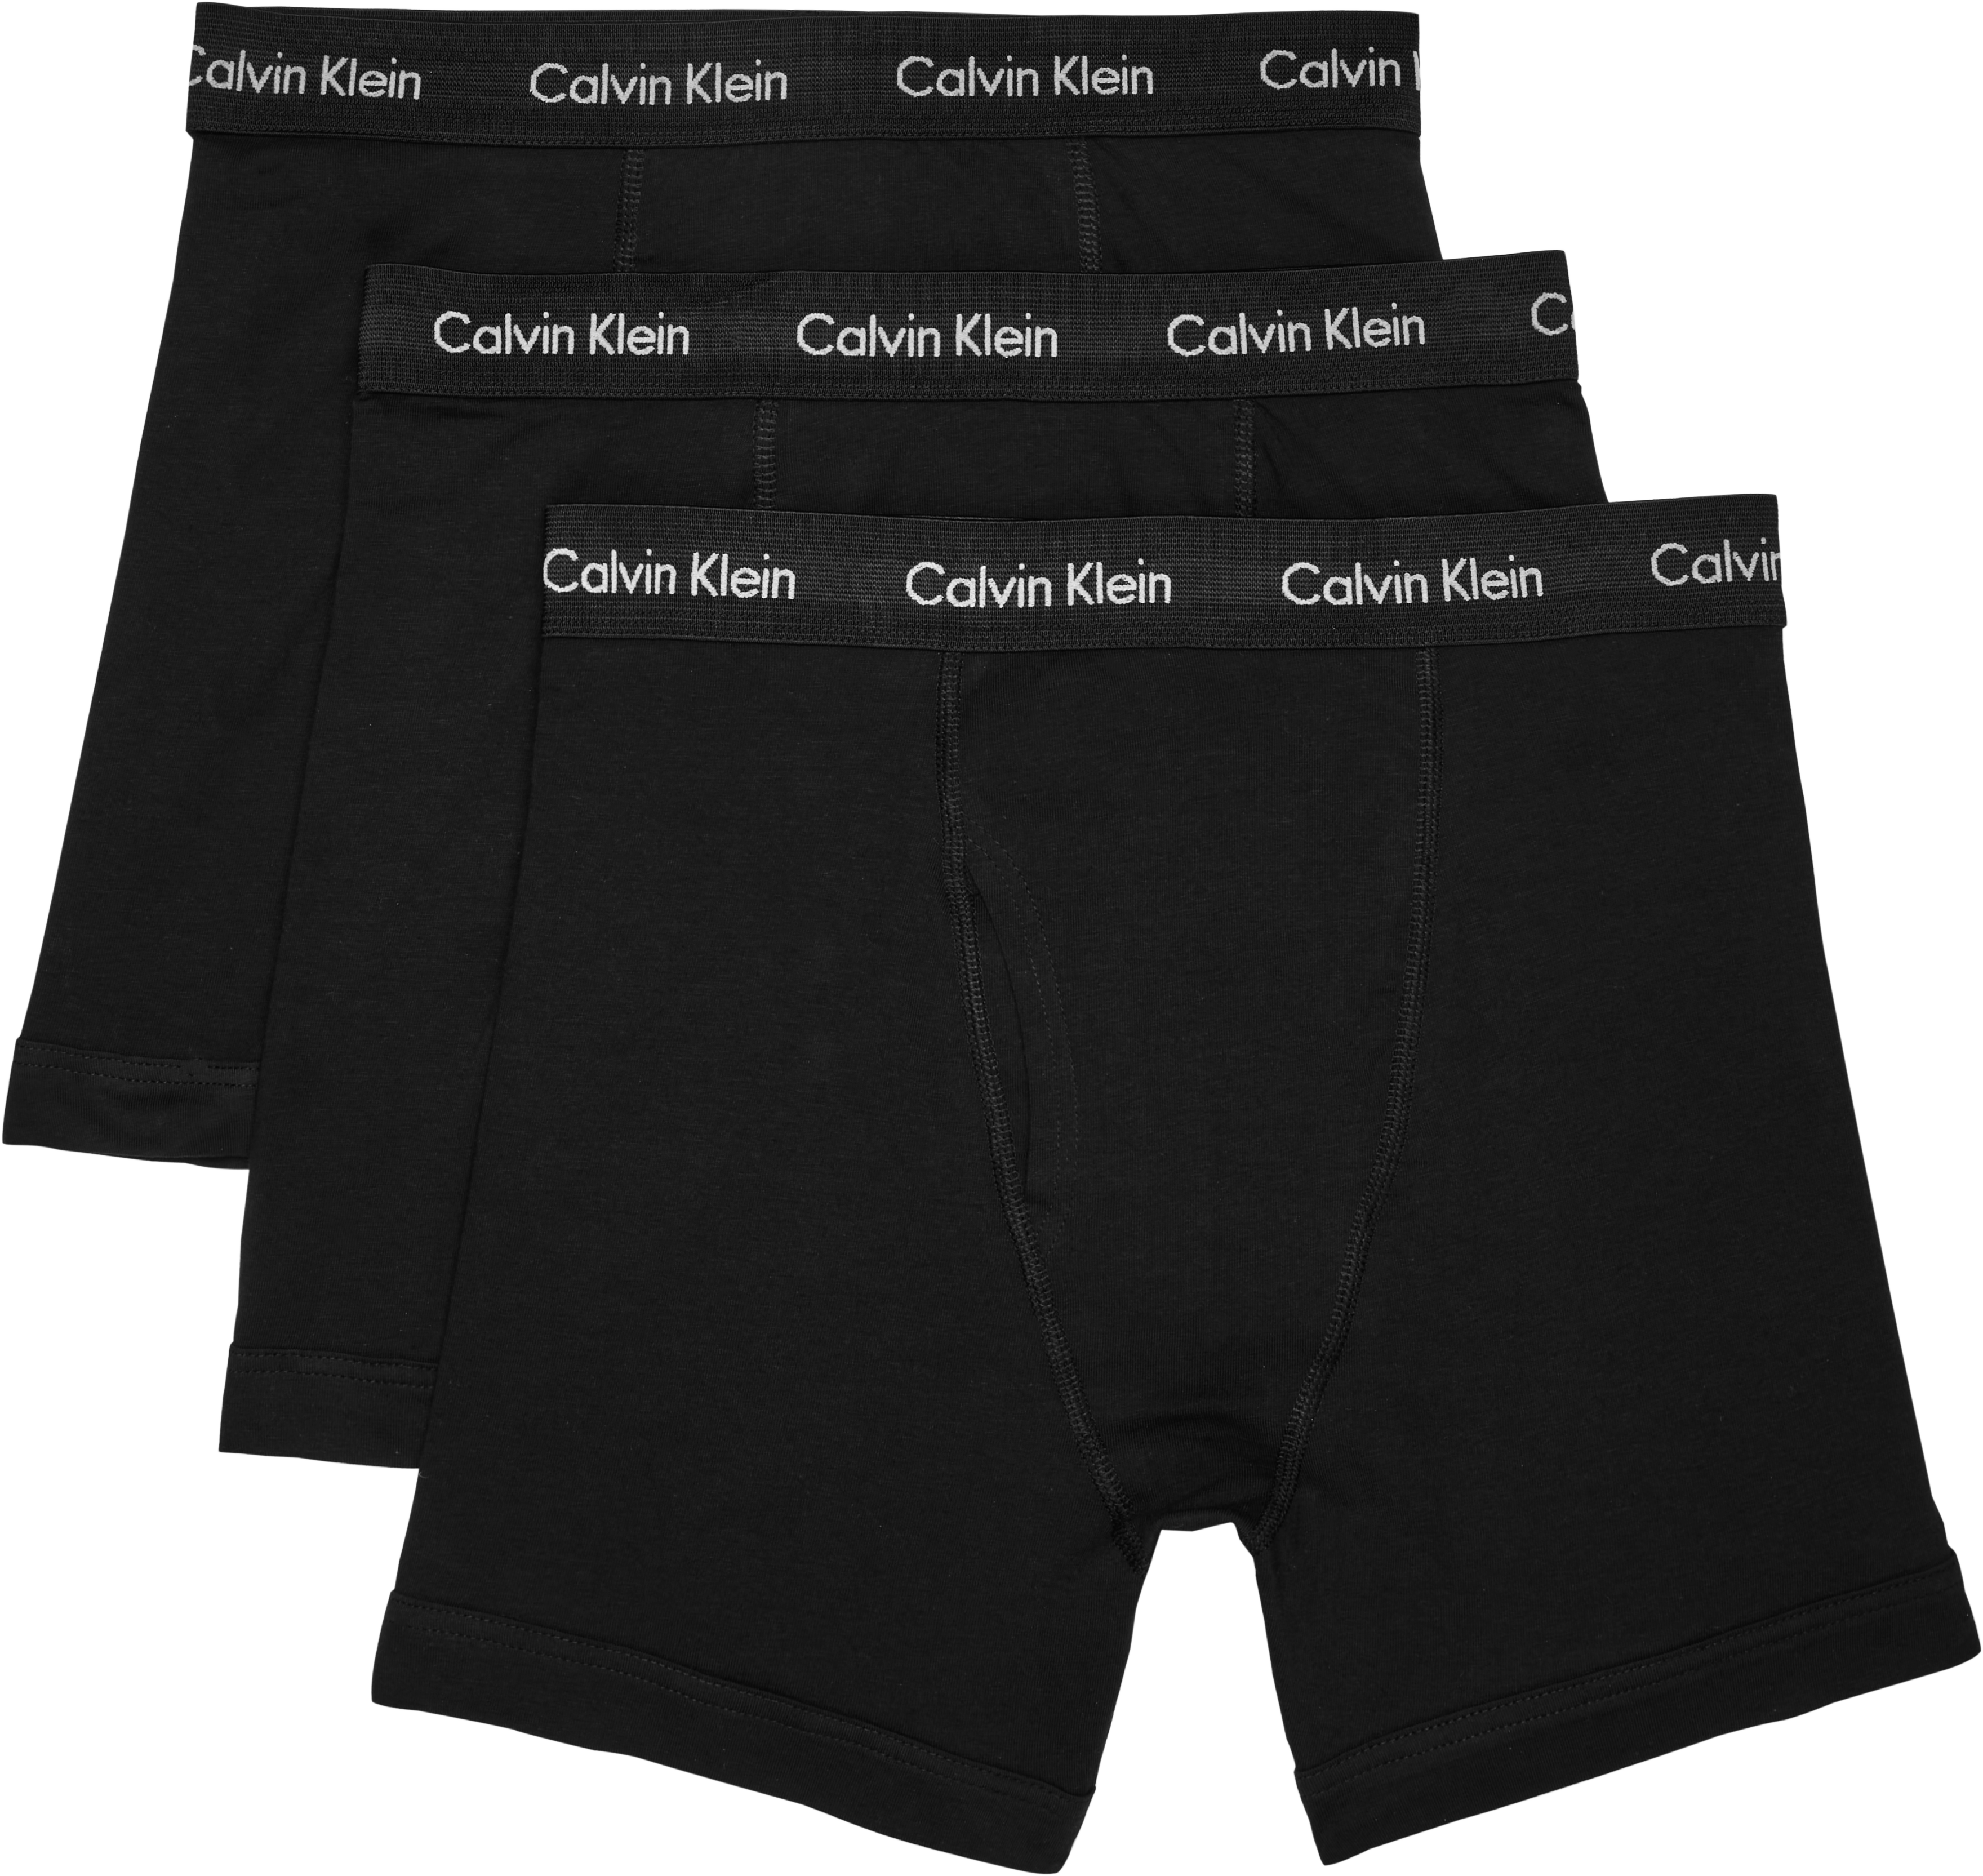 Premium Cotton Men's 3 Pack Brief Underwear